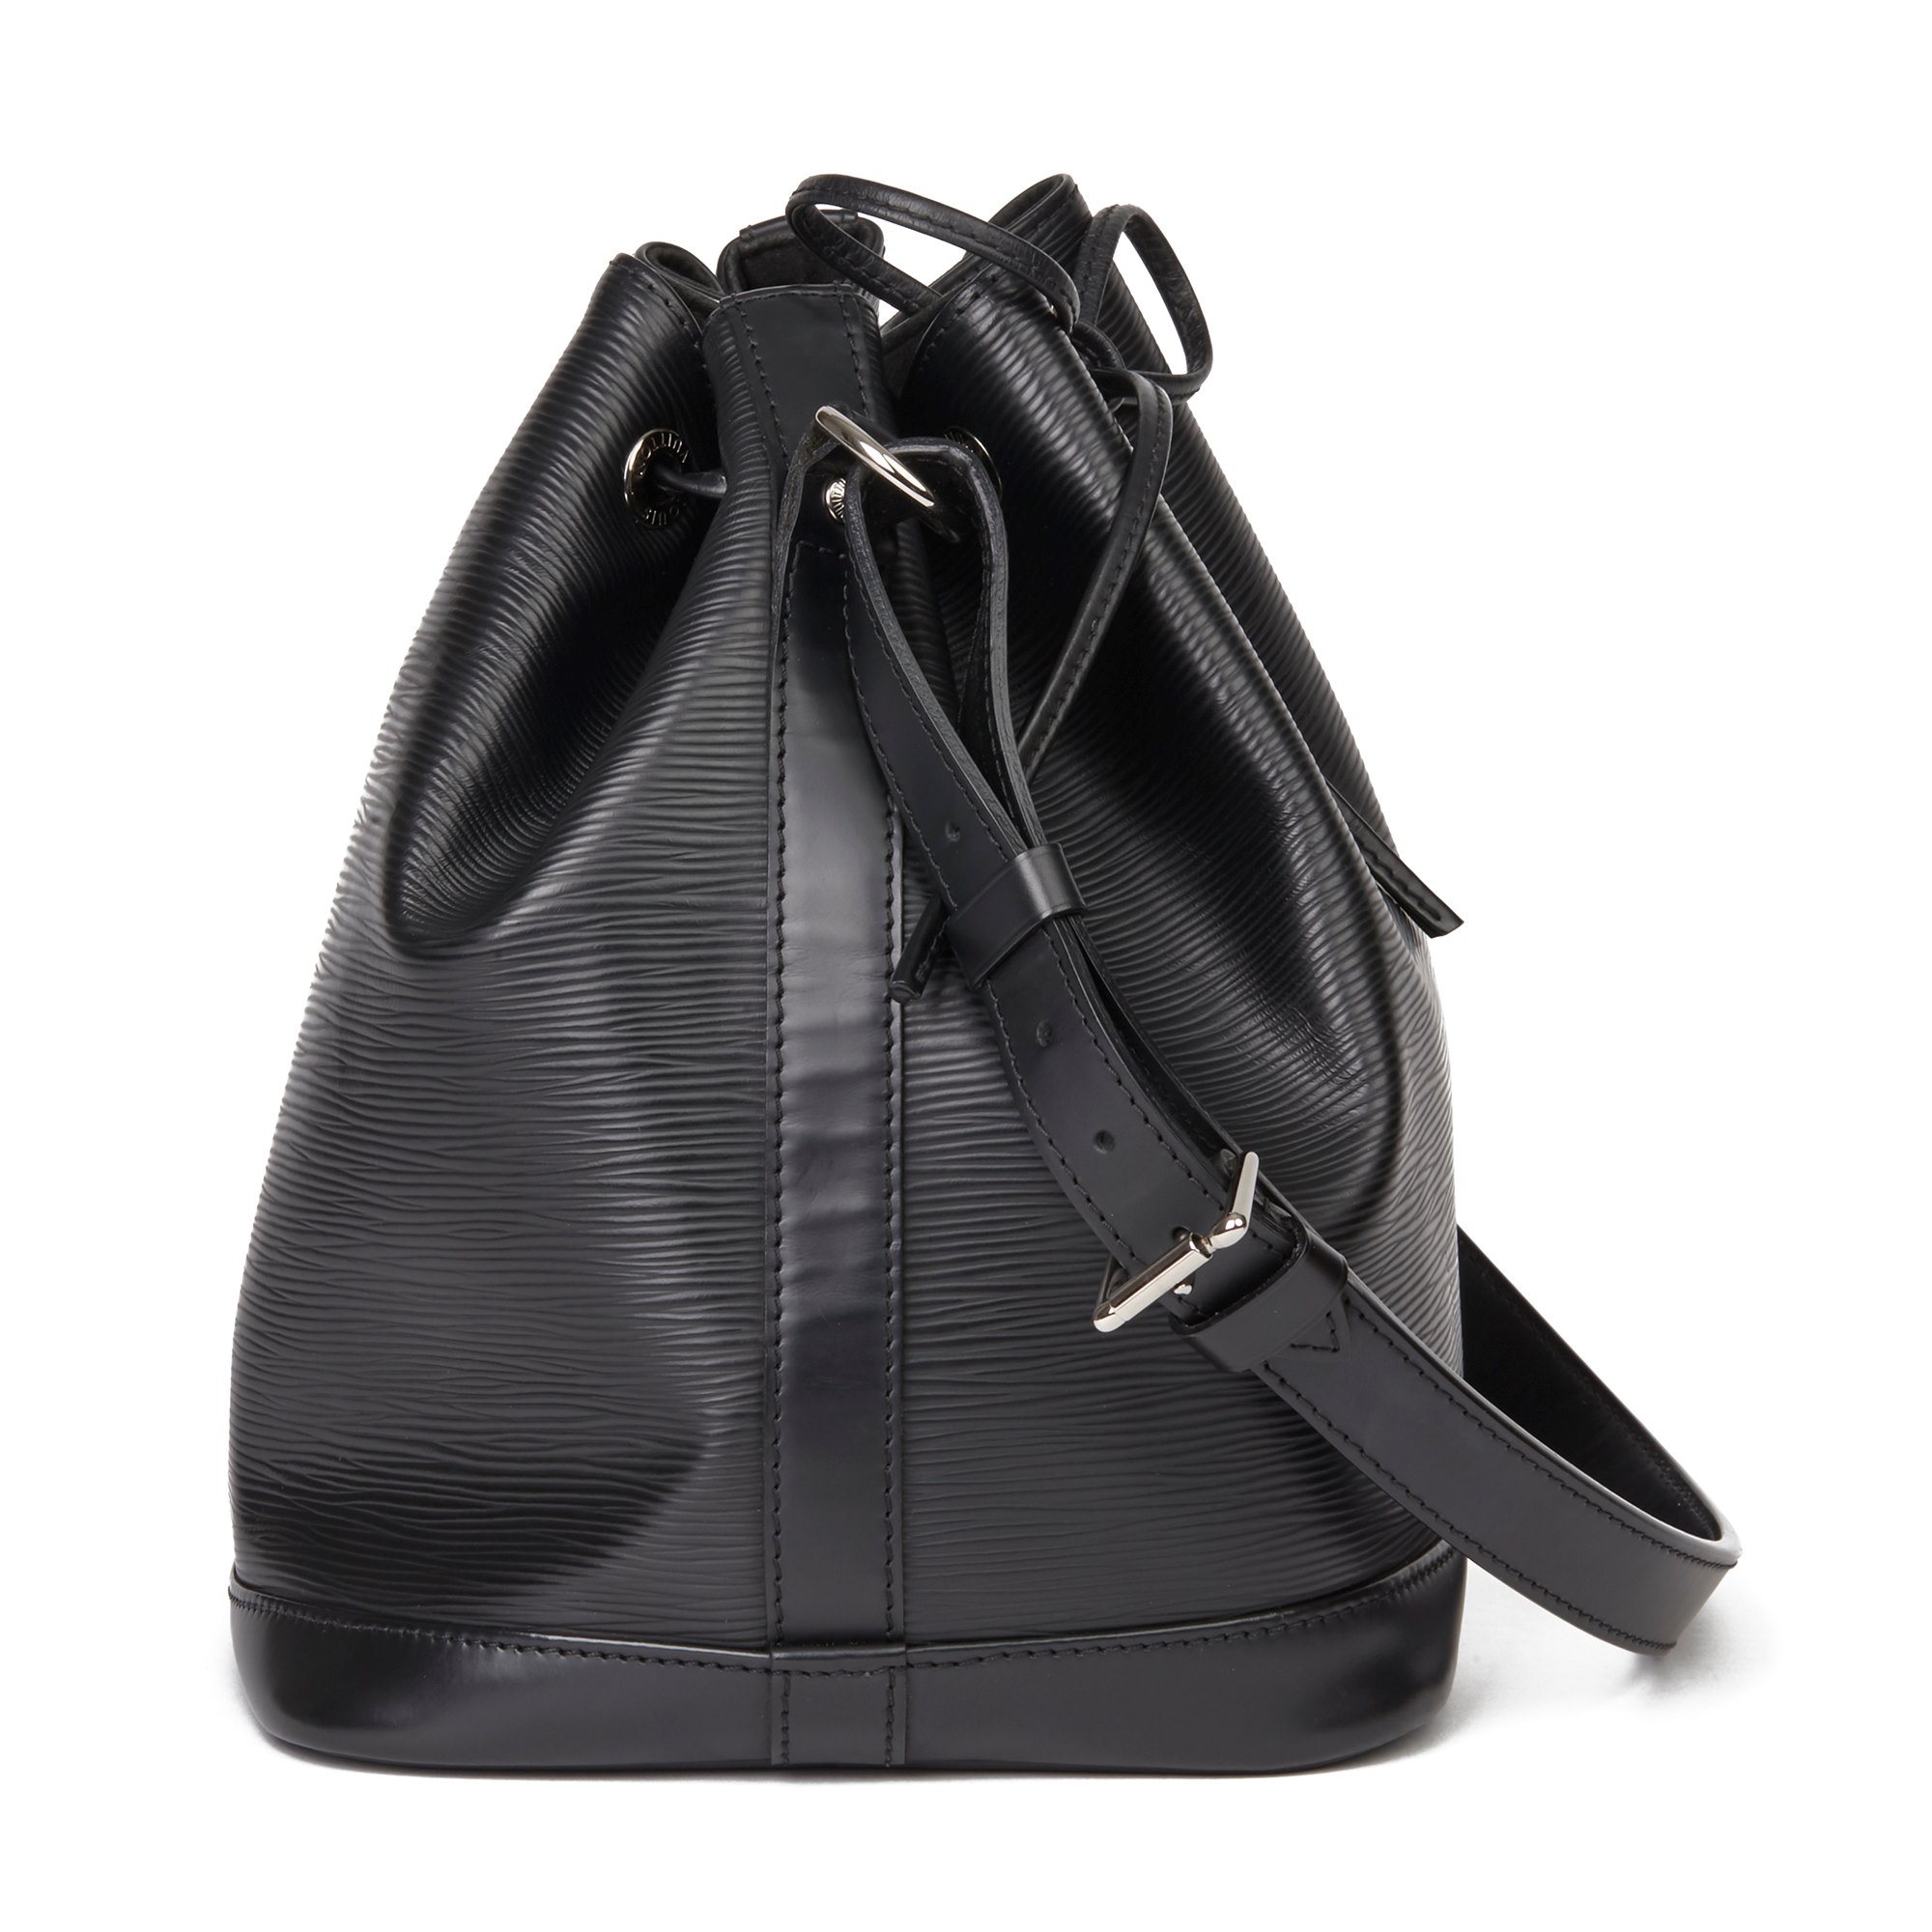 Louis Vuitton Palma de Mallorca Onthego GM Handbag